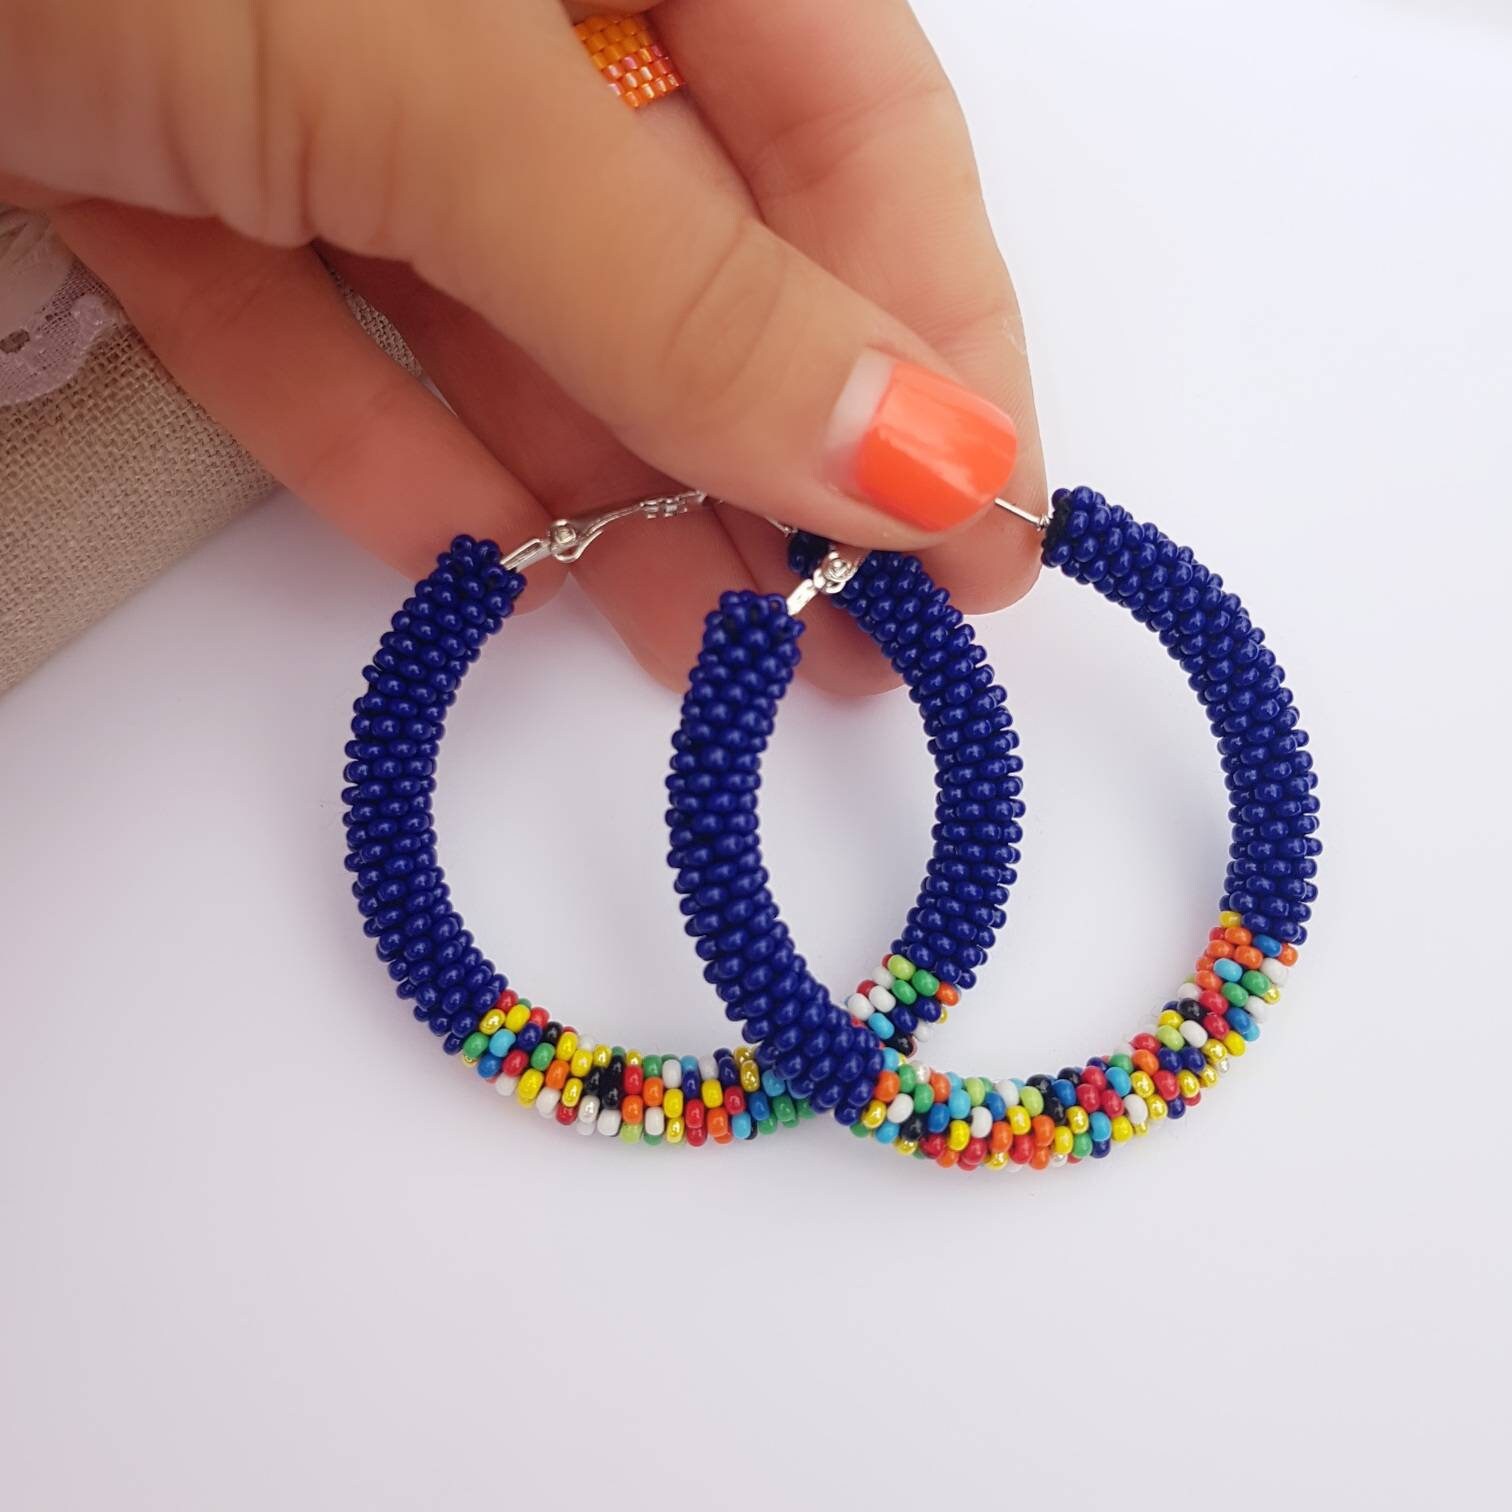 Large blue hoop earrings Seed bead earrings hoops Colorful | Etsy